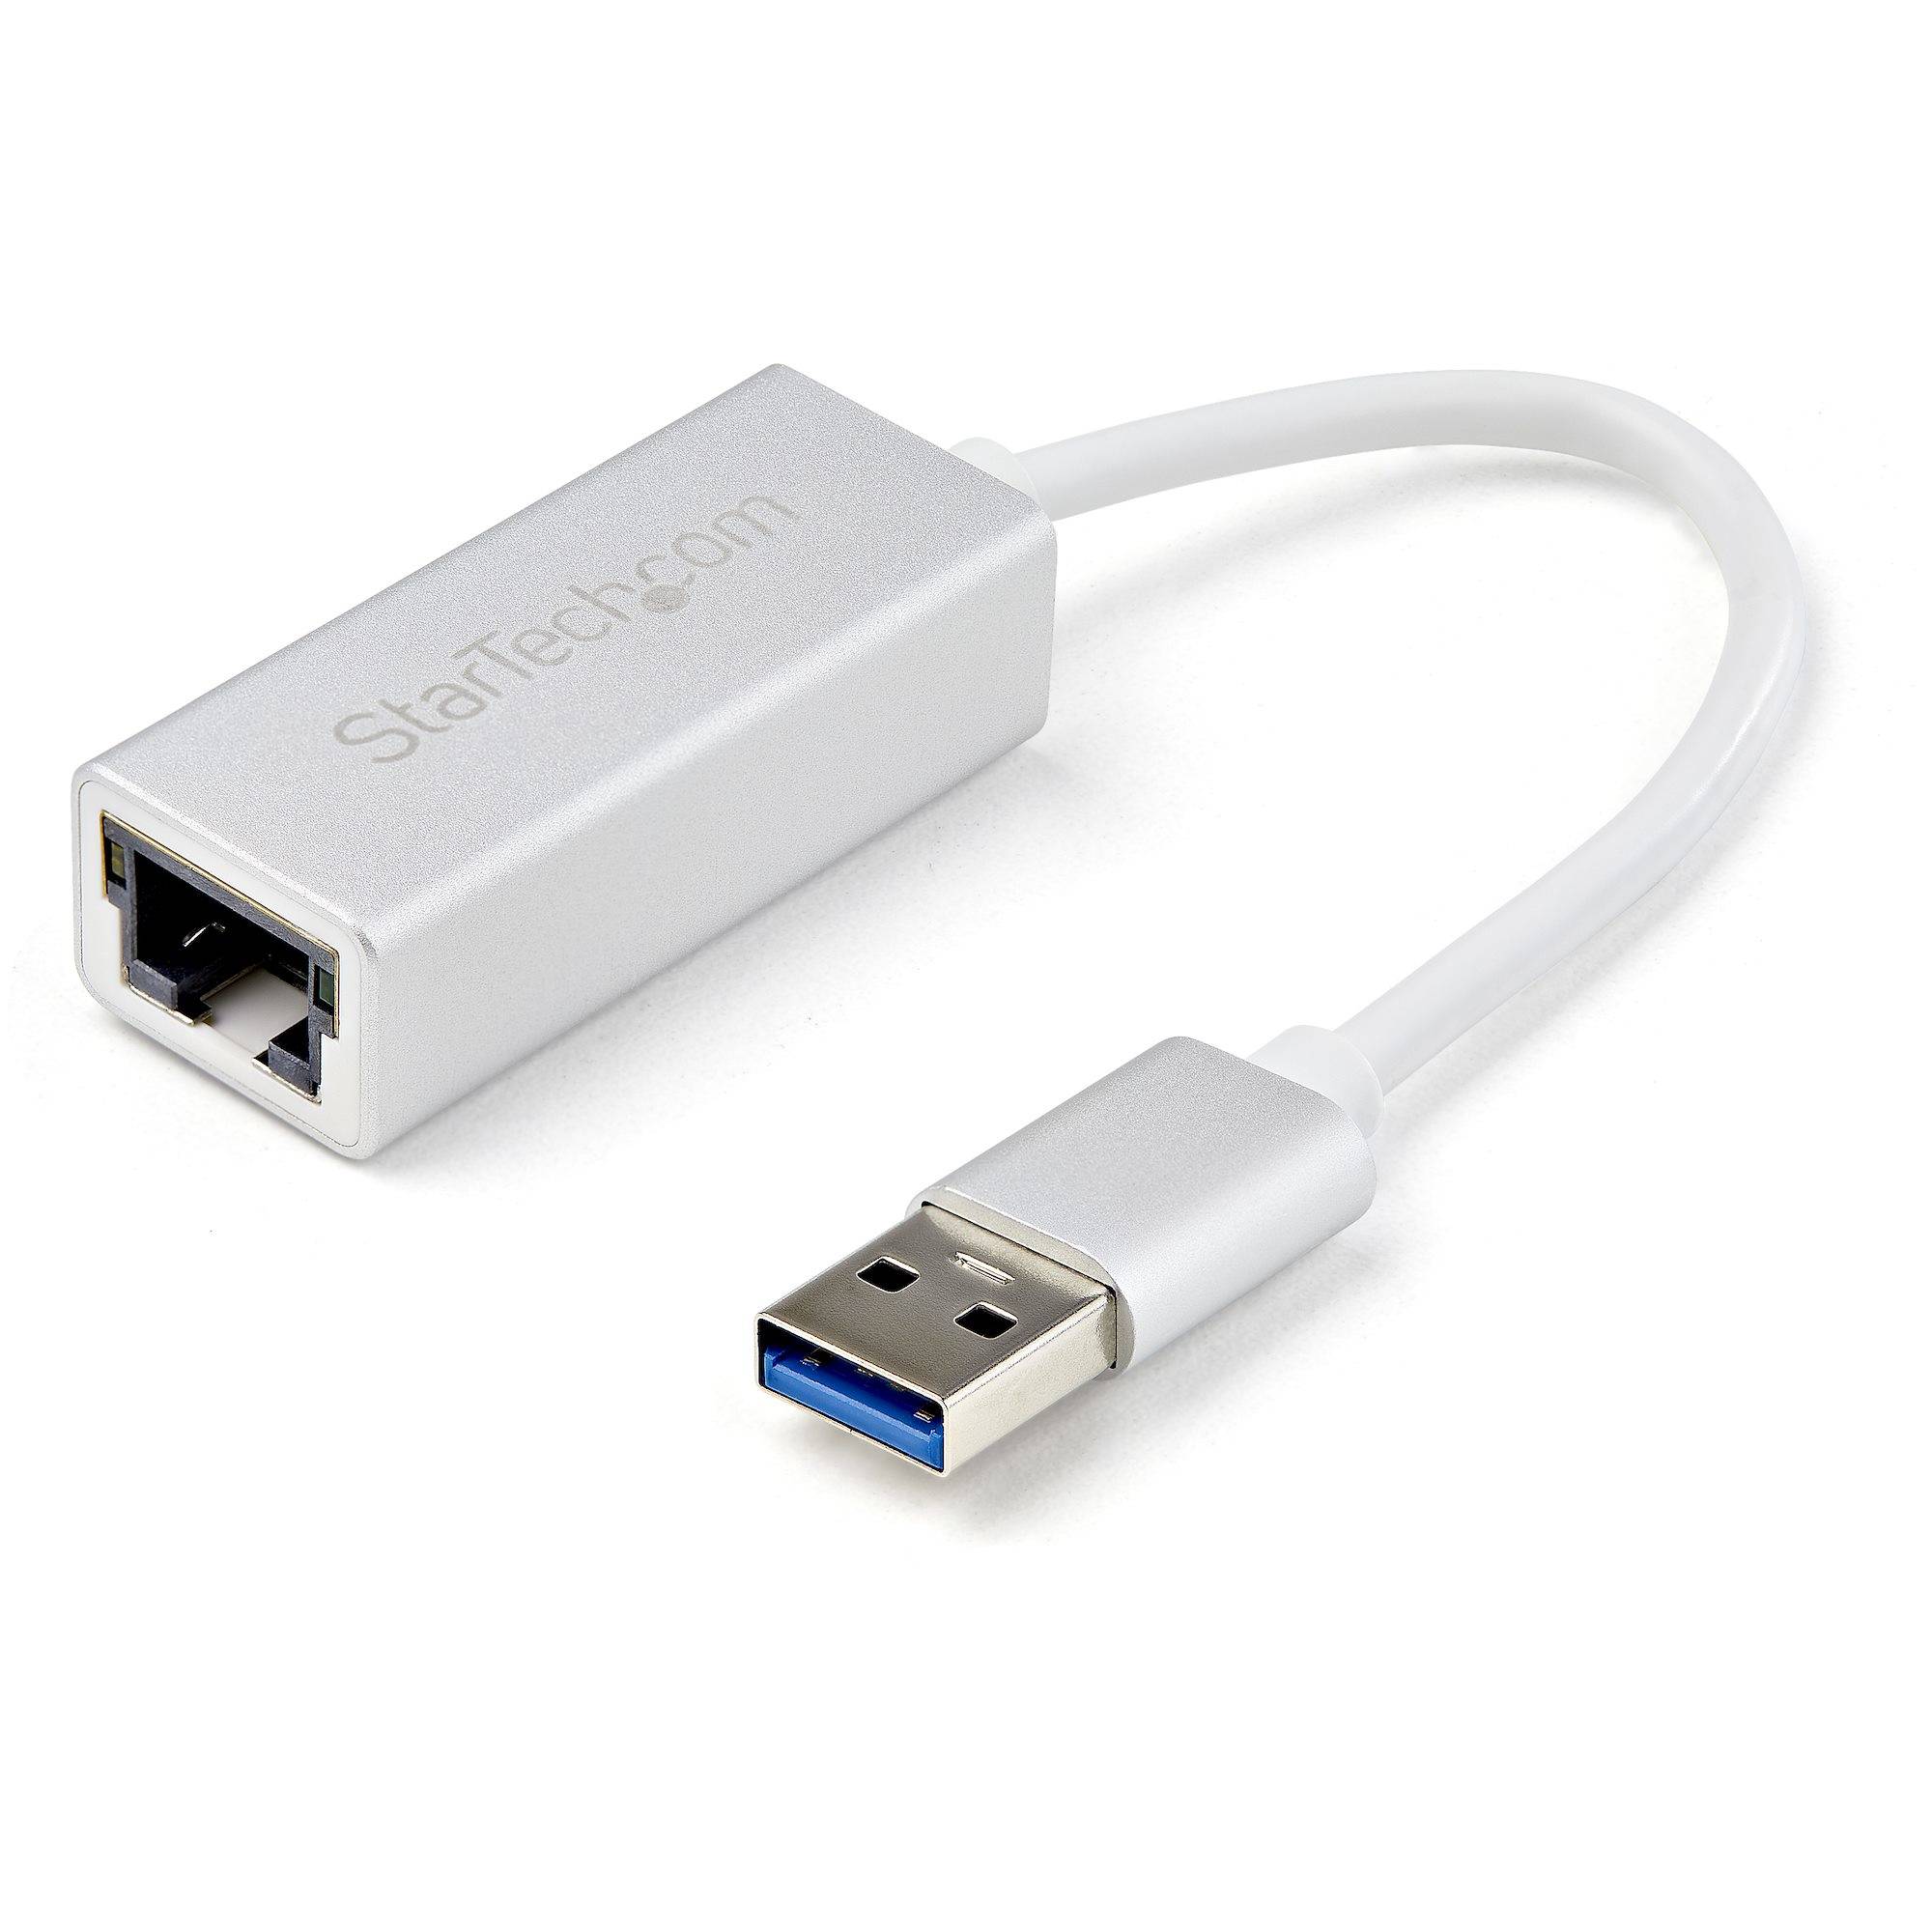 Rca Informatique - Image du produit : ADAPTATEUR RESEAU USB 3.0 VERS GIGABIT ETHERNET - ARGENT